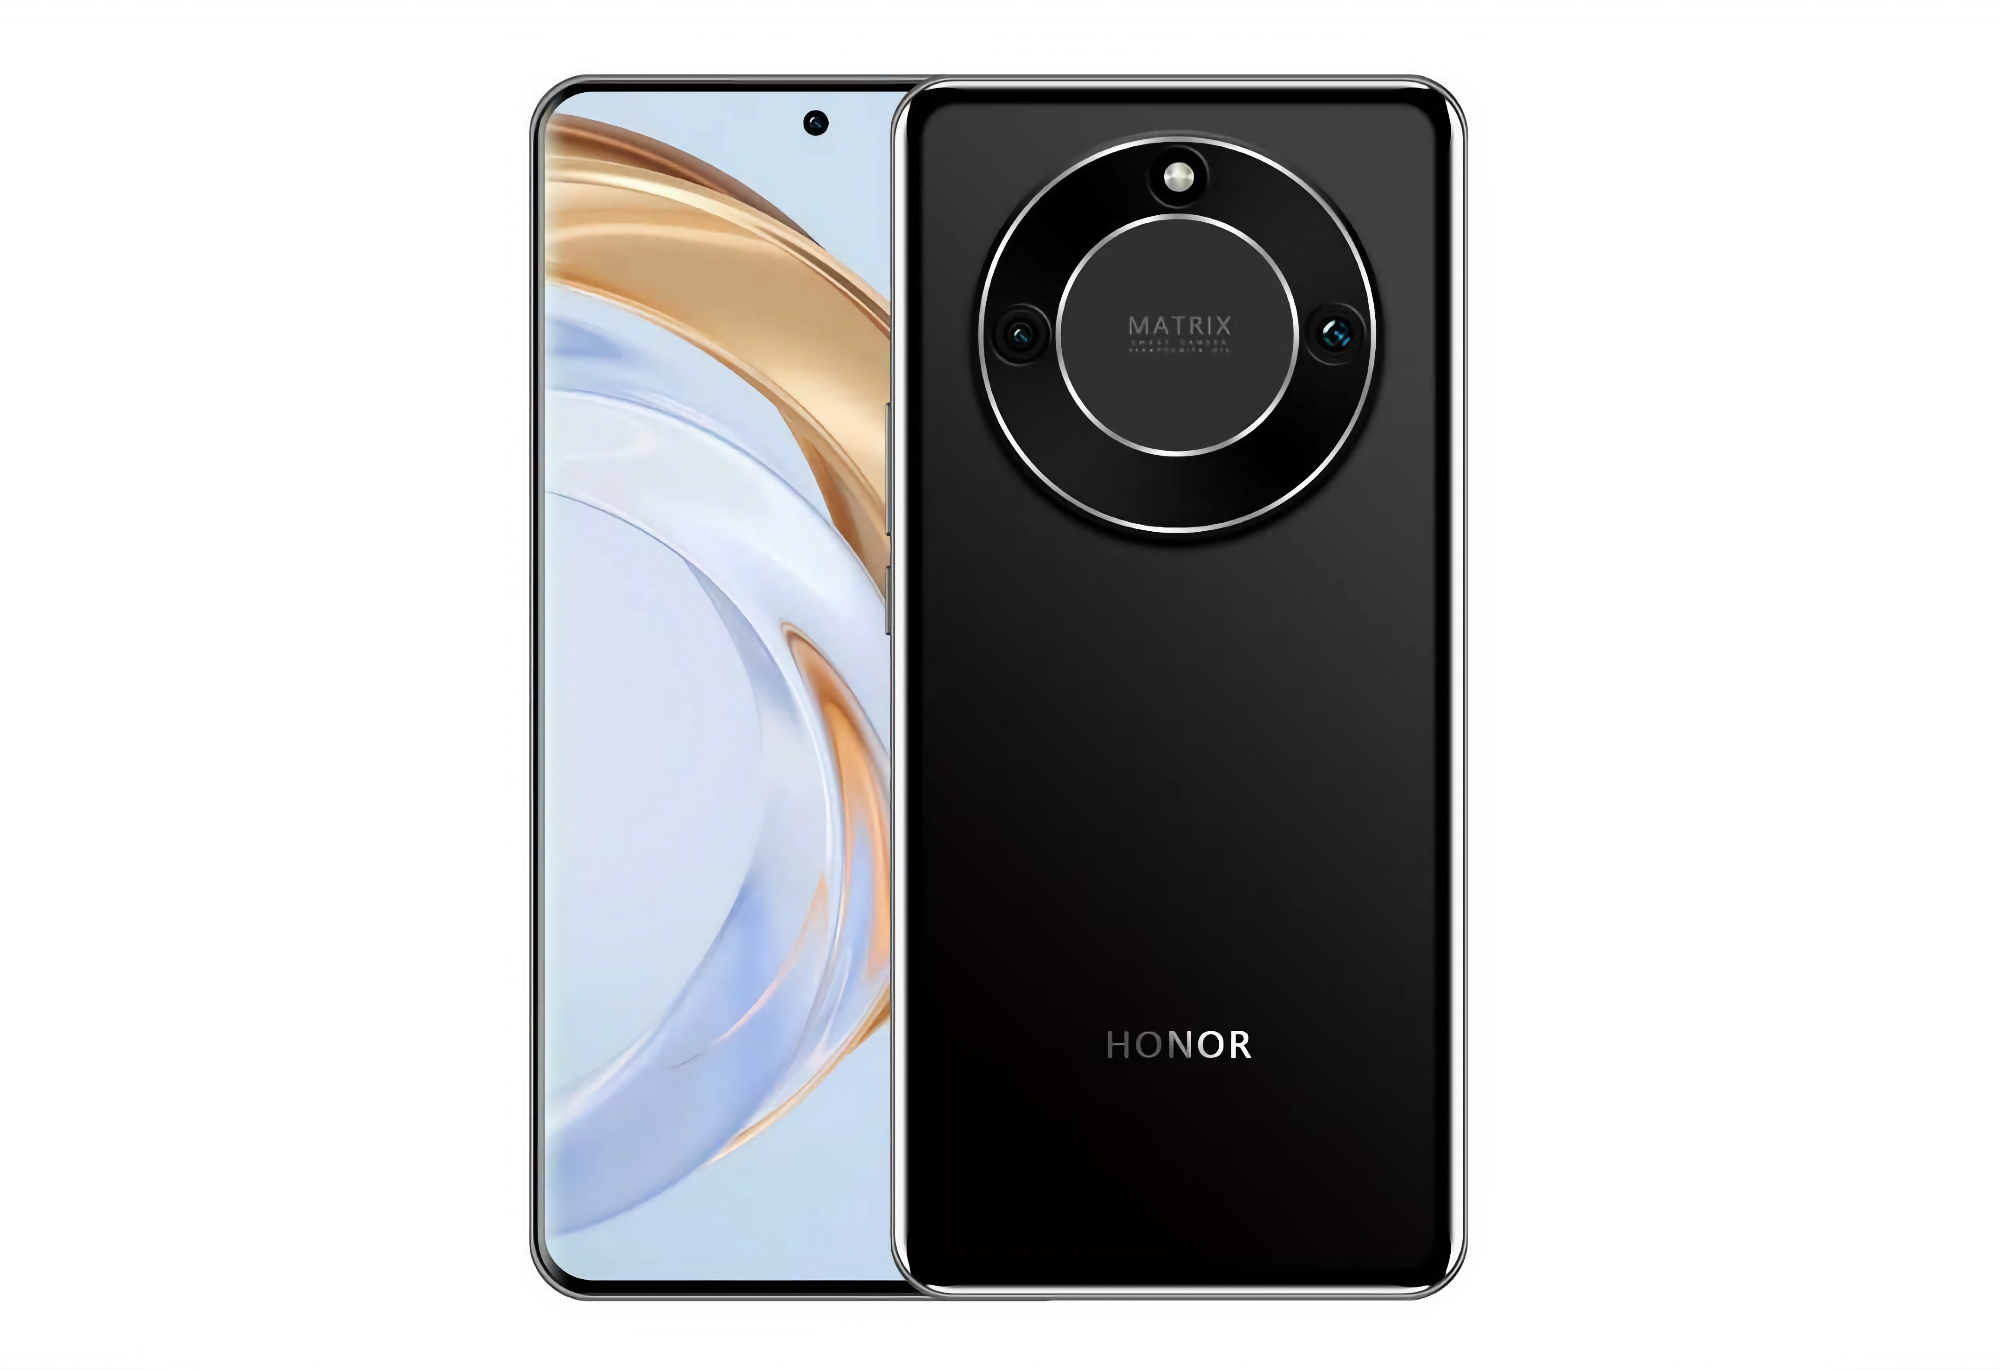 Honor X50 met plat beeldscherm en dubbele camera is opgedoken in kwaliteitsbeelden